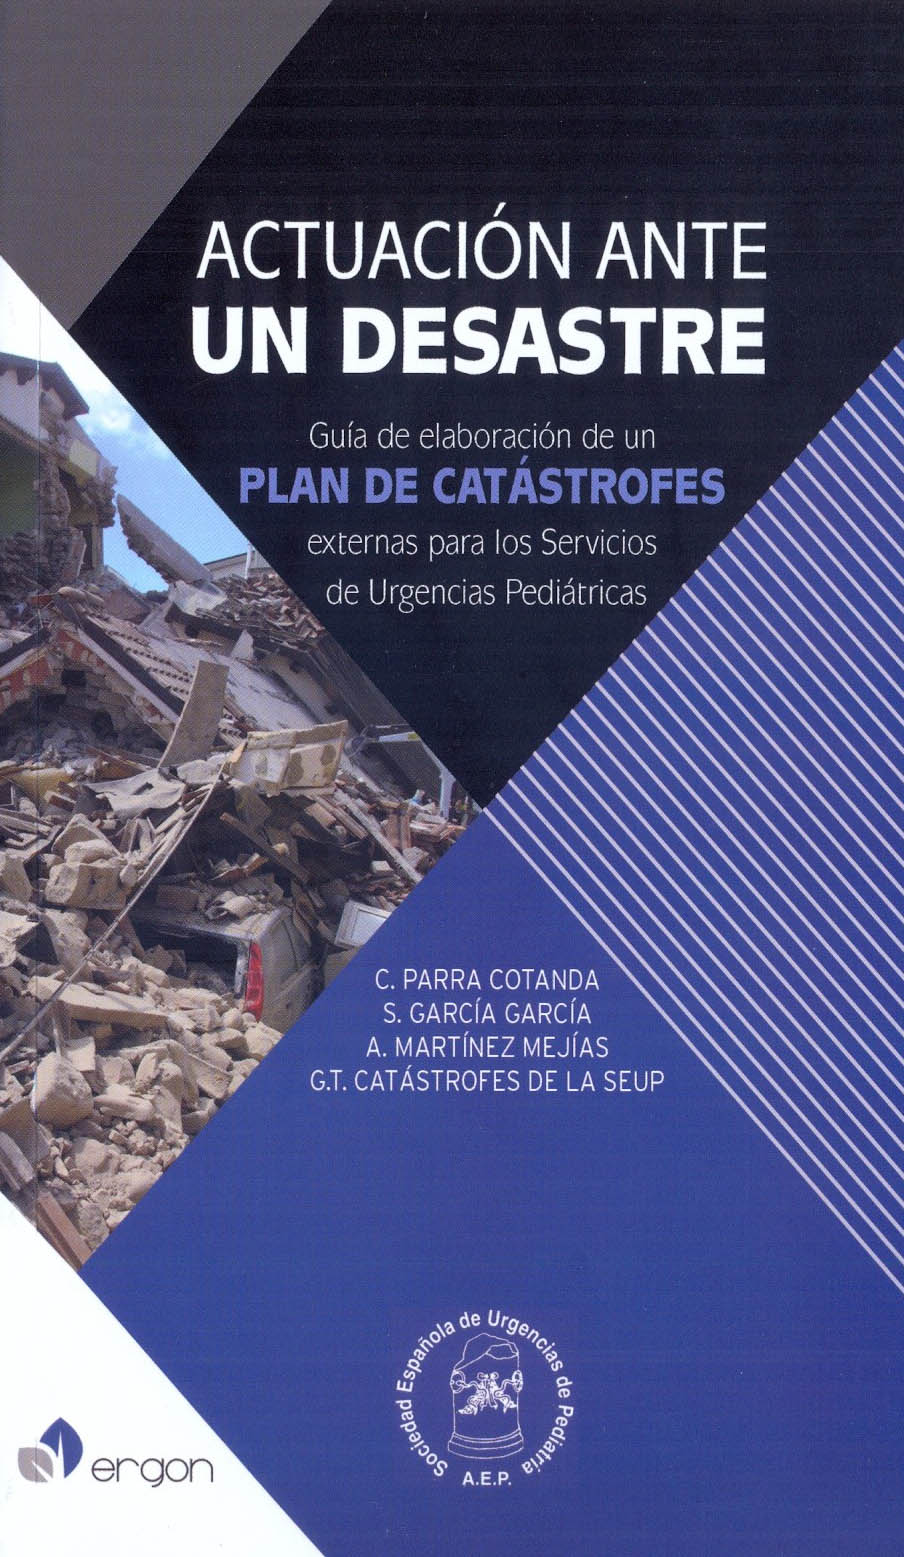 Actuación ante un desastre: Guía de elaboración de un Plan de Catástrofes externas para los Servicios de Urgencias Pediátricas